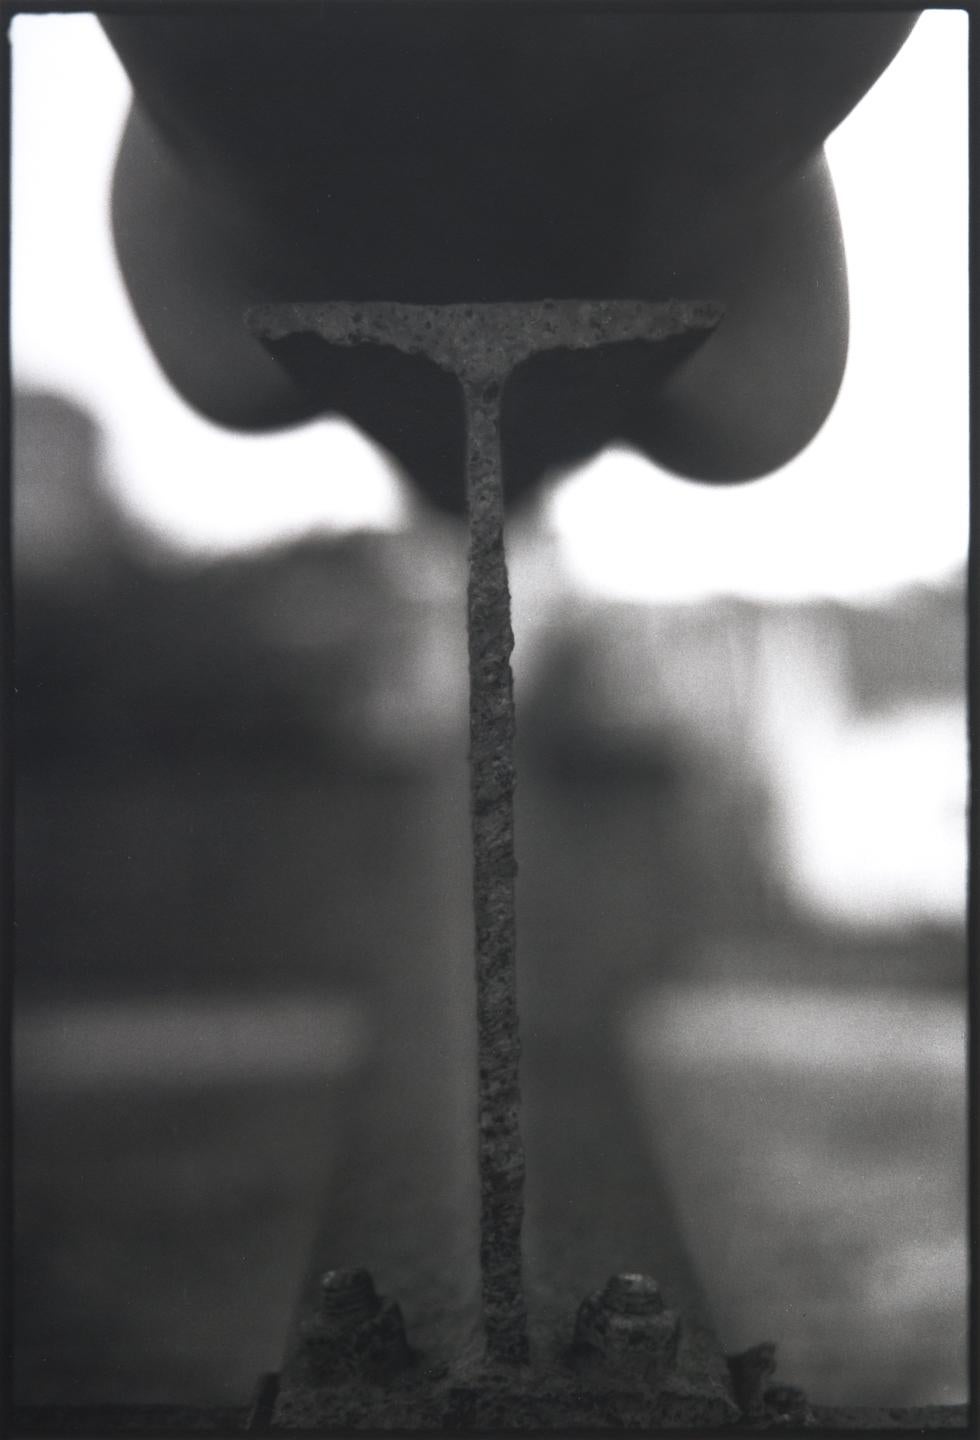 Stahlstrahl Nude- Schwarz-Weiß-Fotografie von Doug Birkenheuer, mattiert, gerahmt 